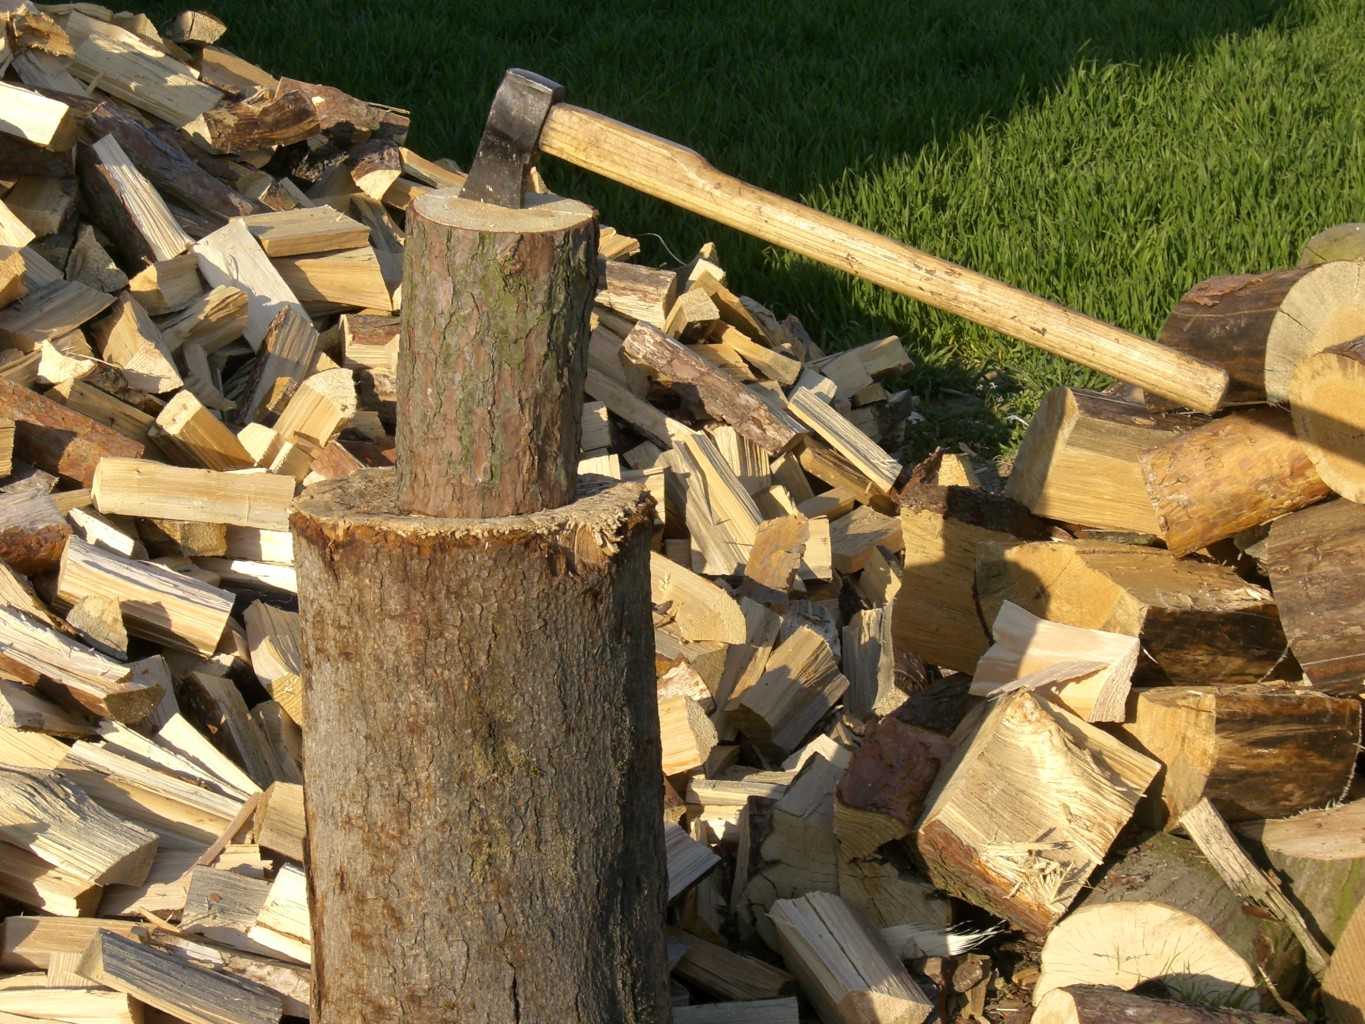 Какие дрова лучше использовать для печки?